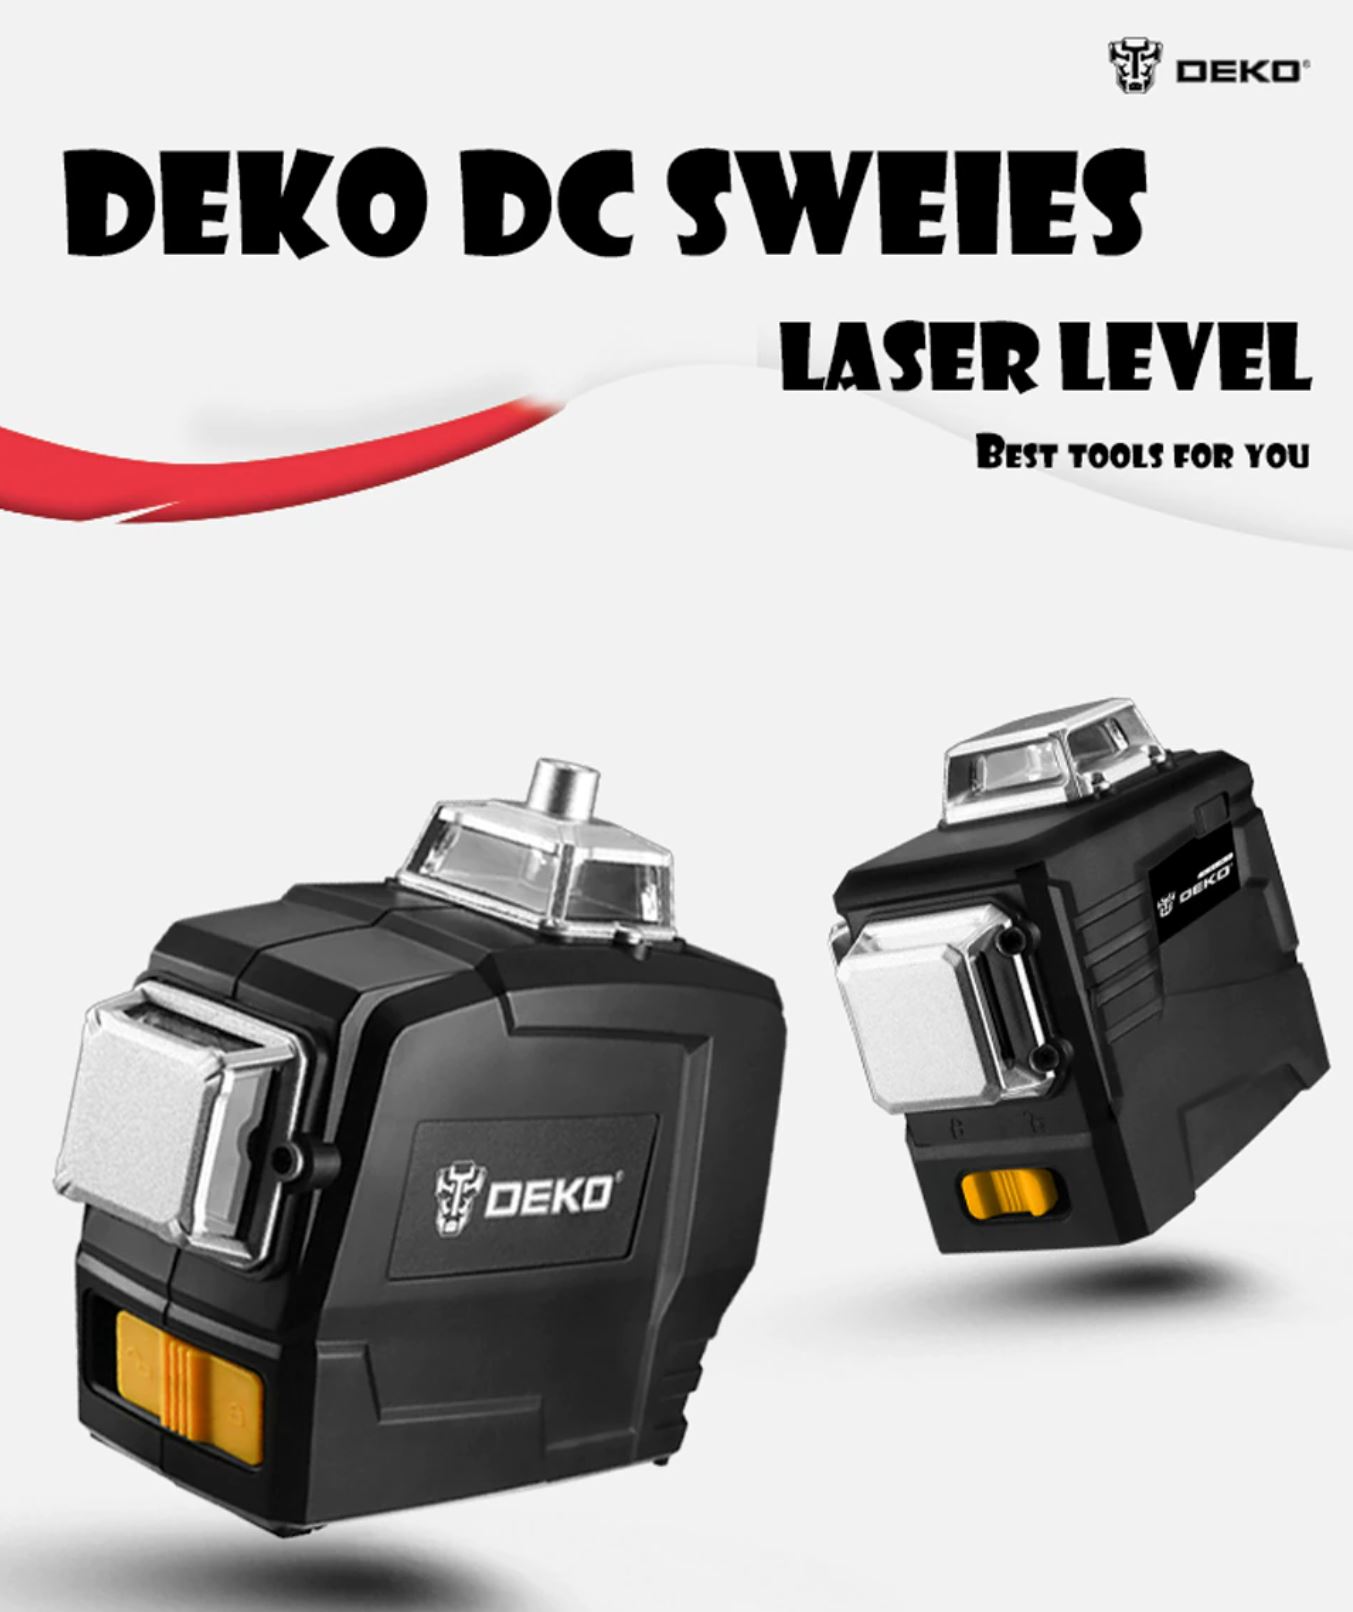 Najlepsze narzędzia z Aliexpress - promocja produktów marki DEKO - DEKO DC SWEIES